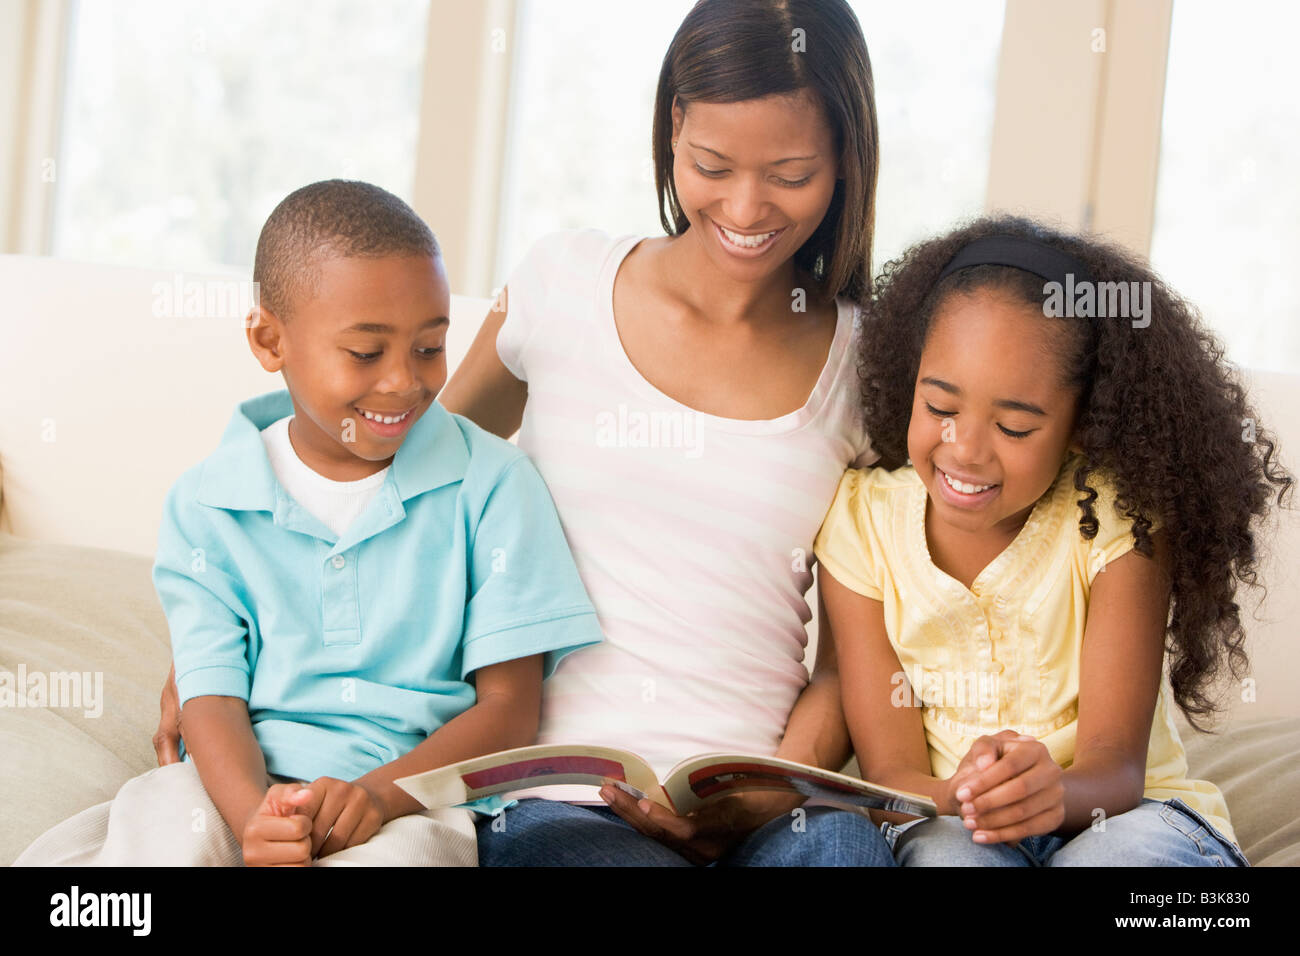 Donna e due bambini seduti nella sala lettura prenota e sorridente Foto Stock